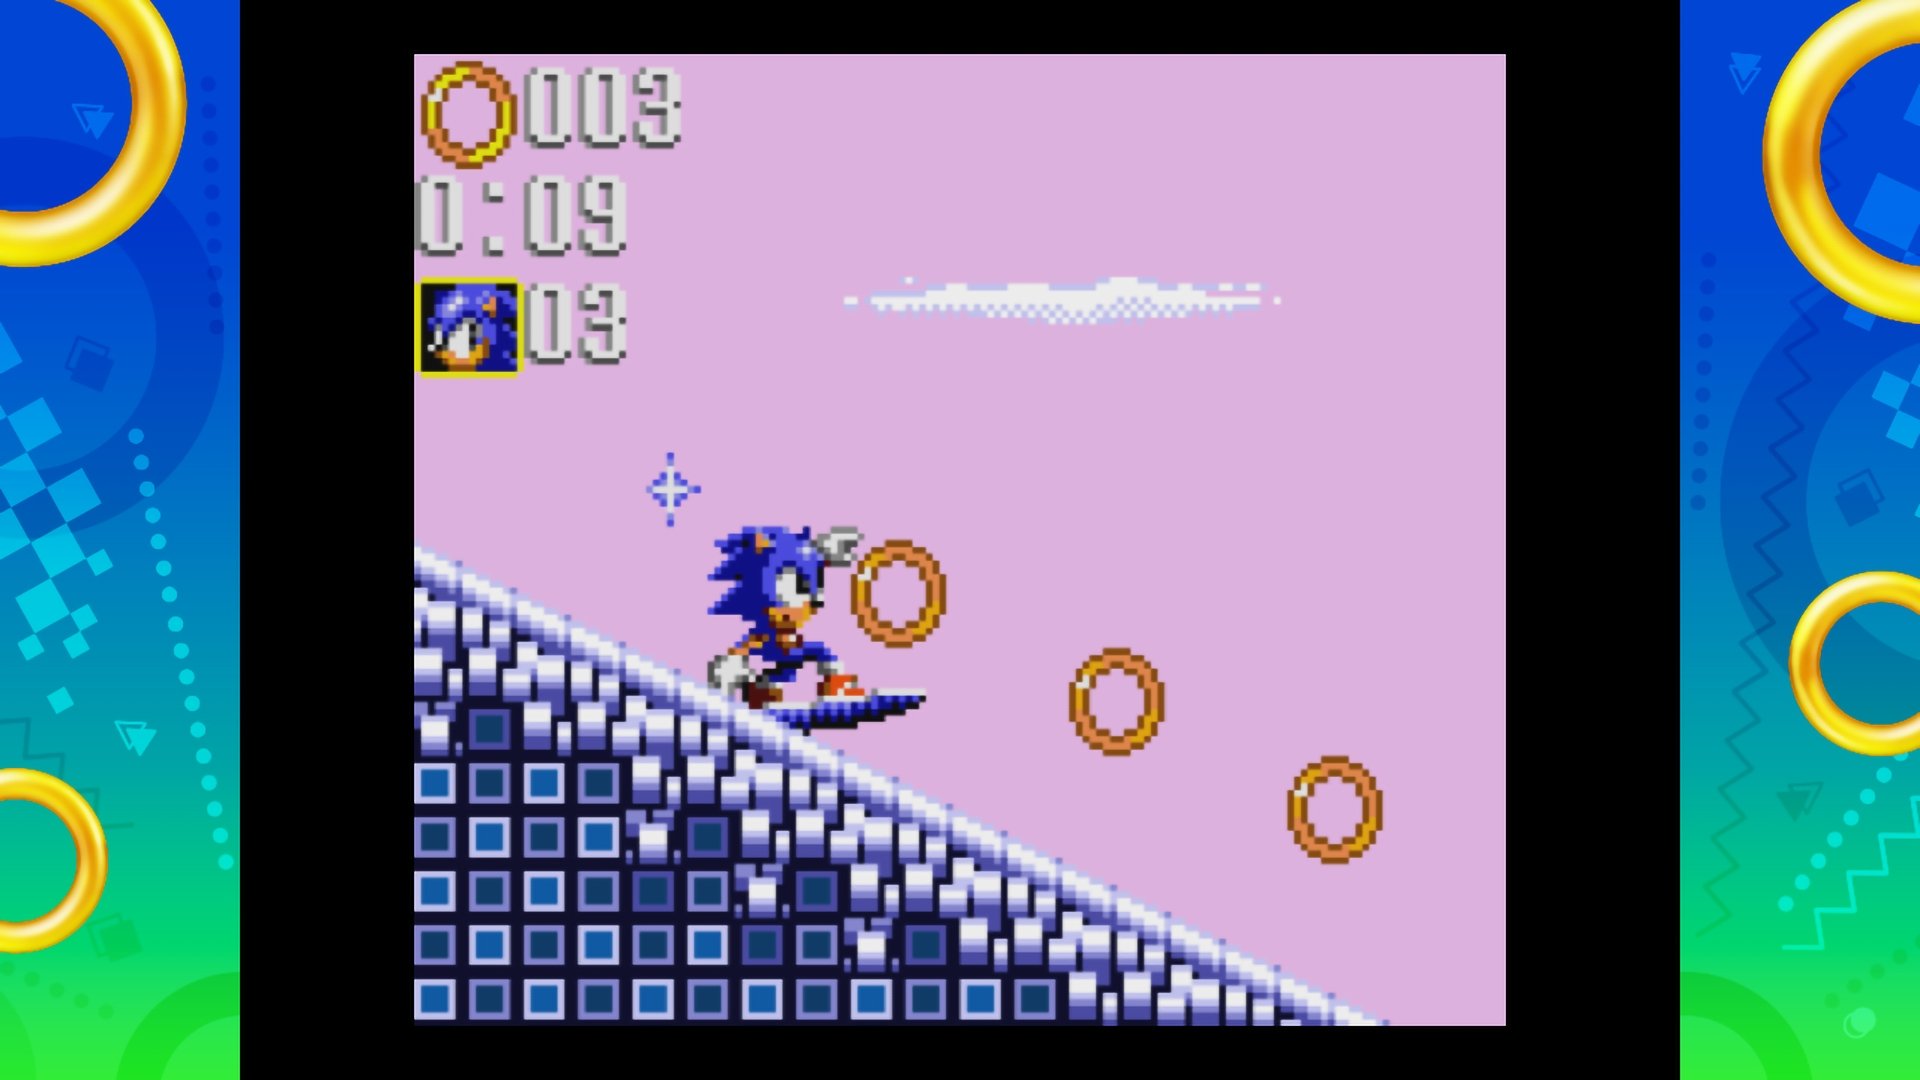 Sonic Origins Plus PS4